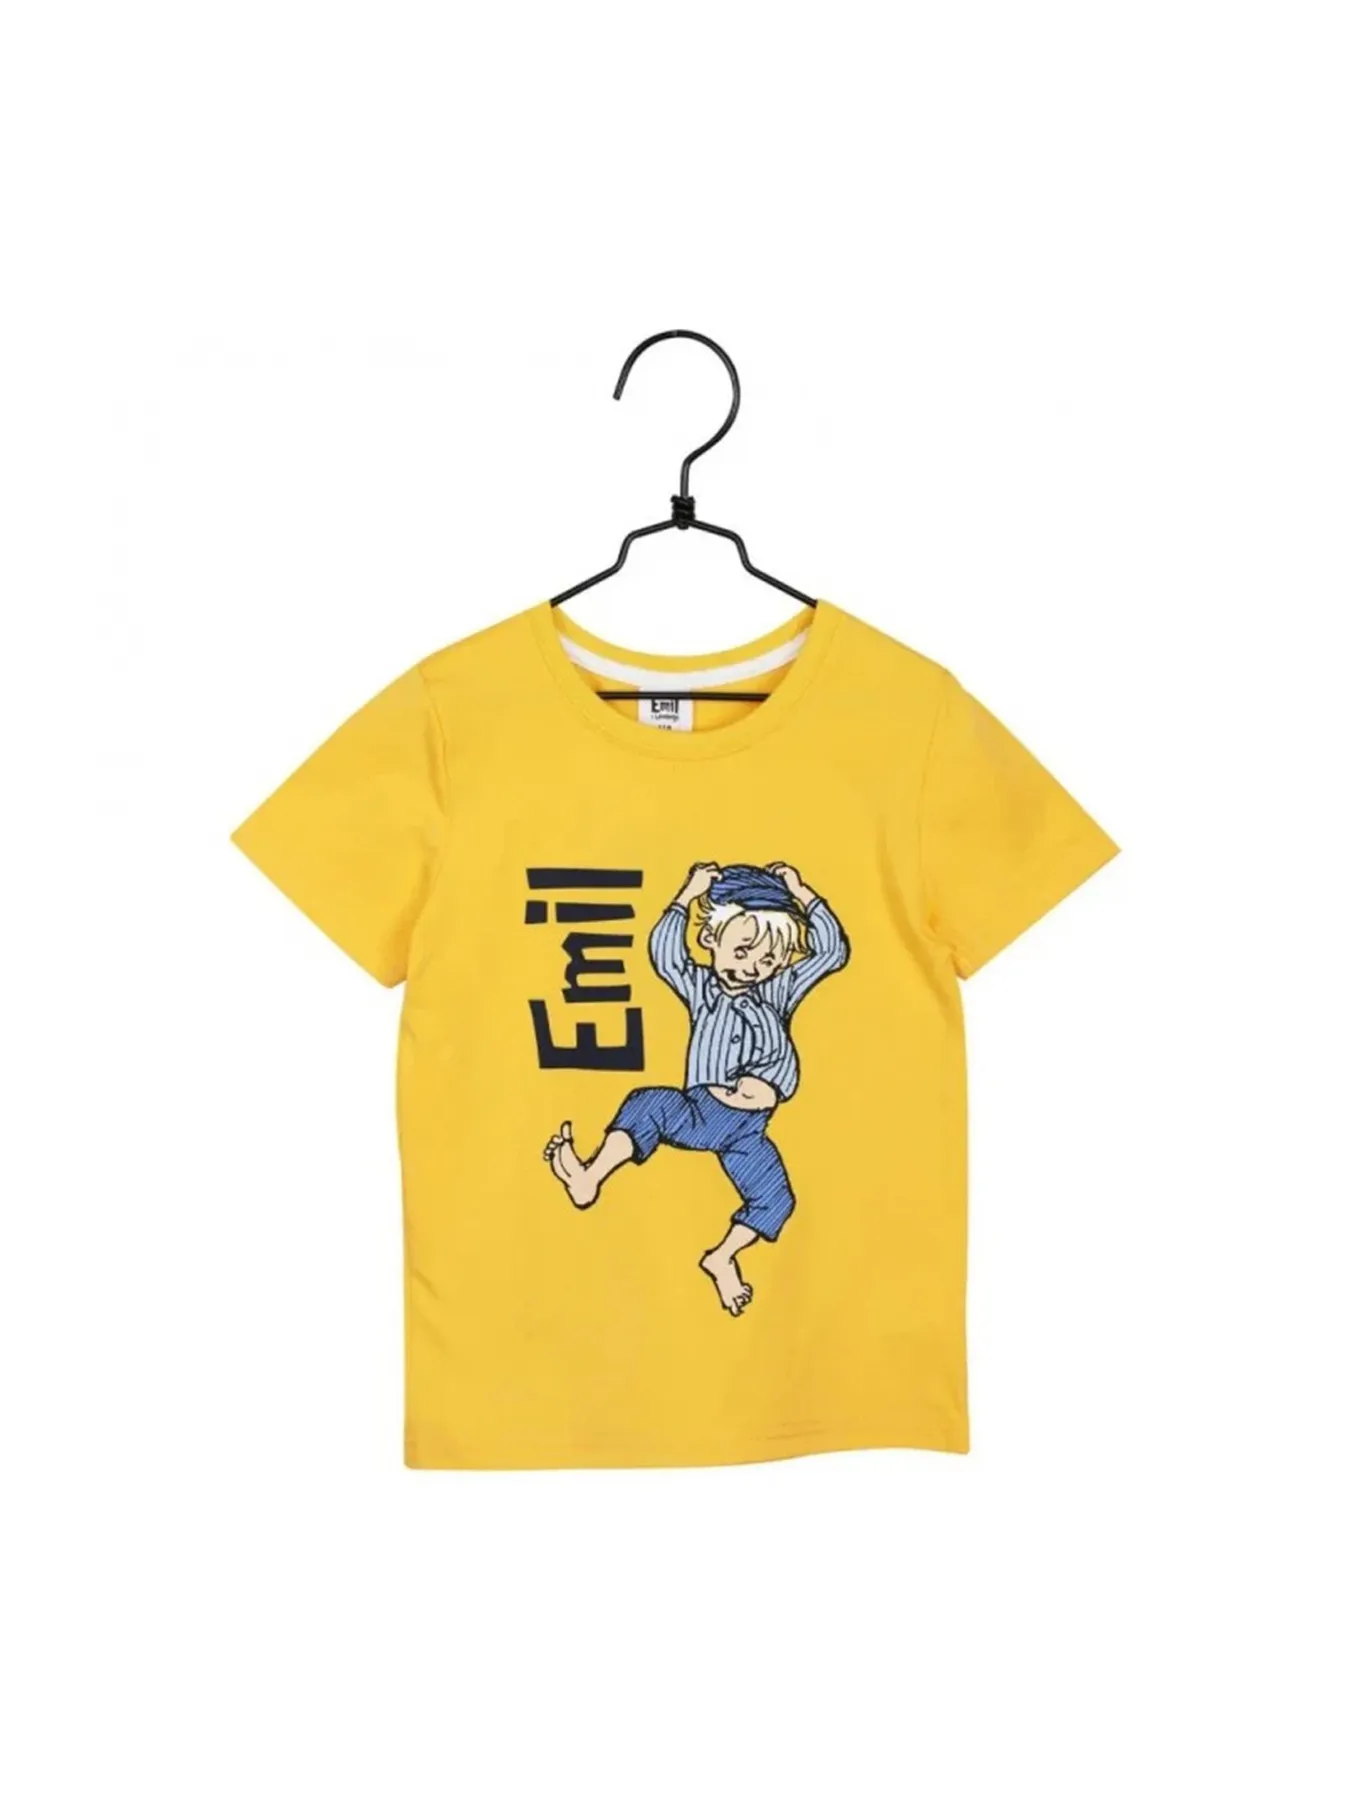 T-Shirt Michel aus Lönneberga, gelb